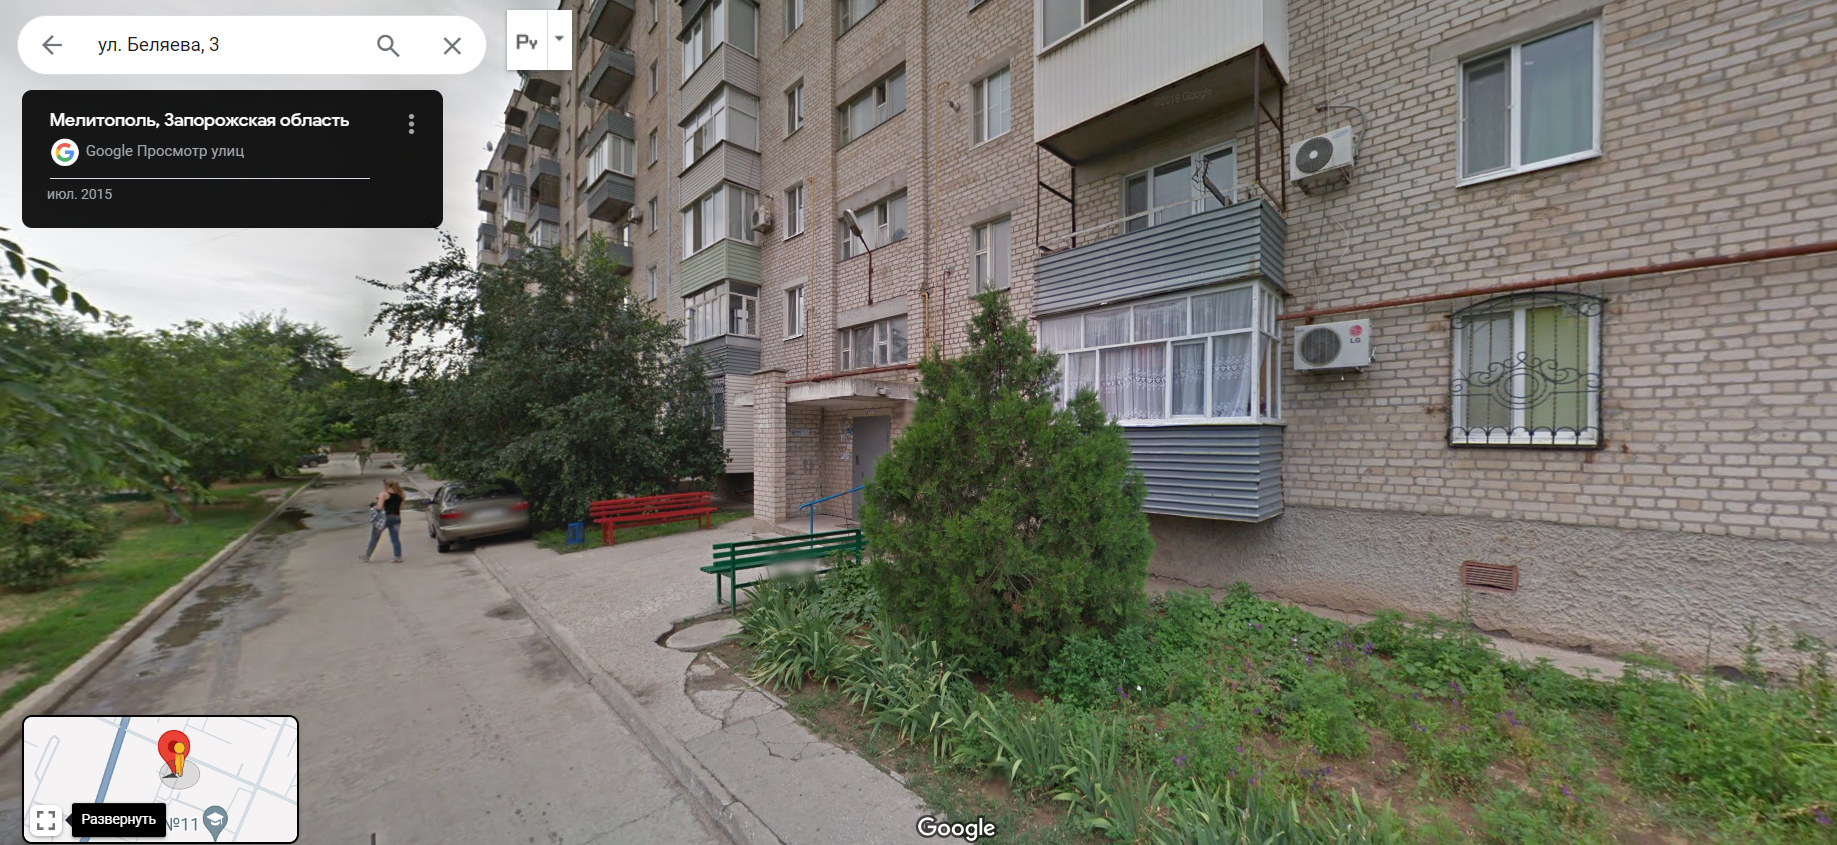 Так, будинок №3 на вулиці Бєляєва, судячи з фото, - гуртожиток.